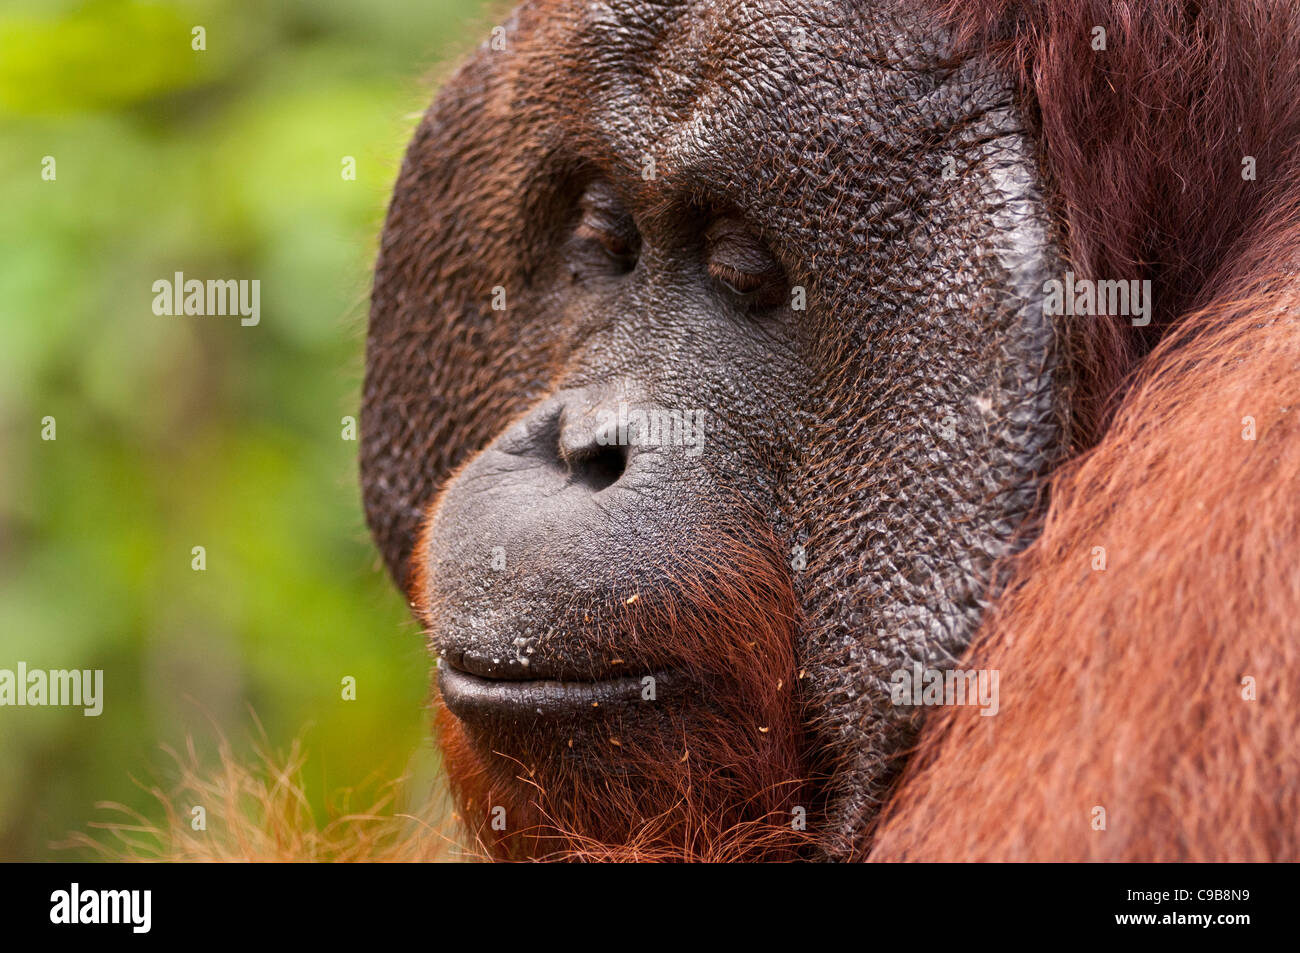 Colpo di profilo di una posizione dominante di maschio adulto Bornean orangutan Orang Utan orango con guanciali. Orizzontale. Copia dello spazio. Foto Stock